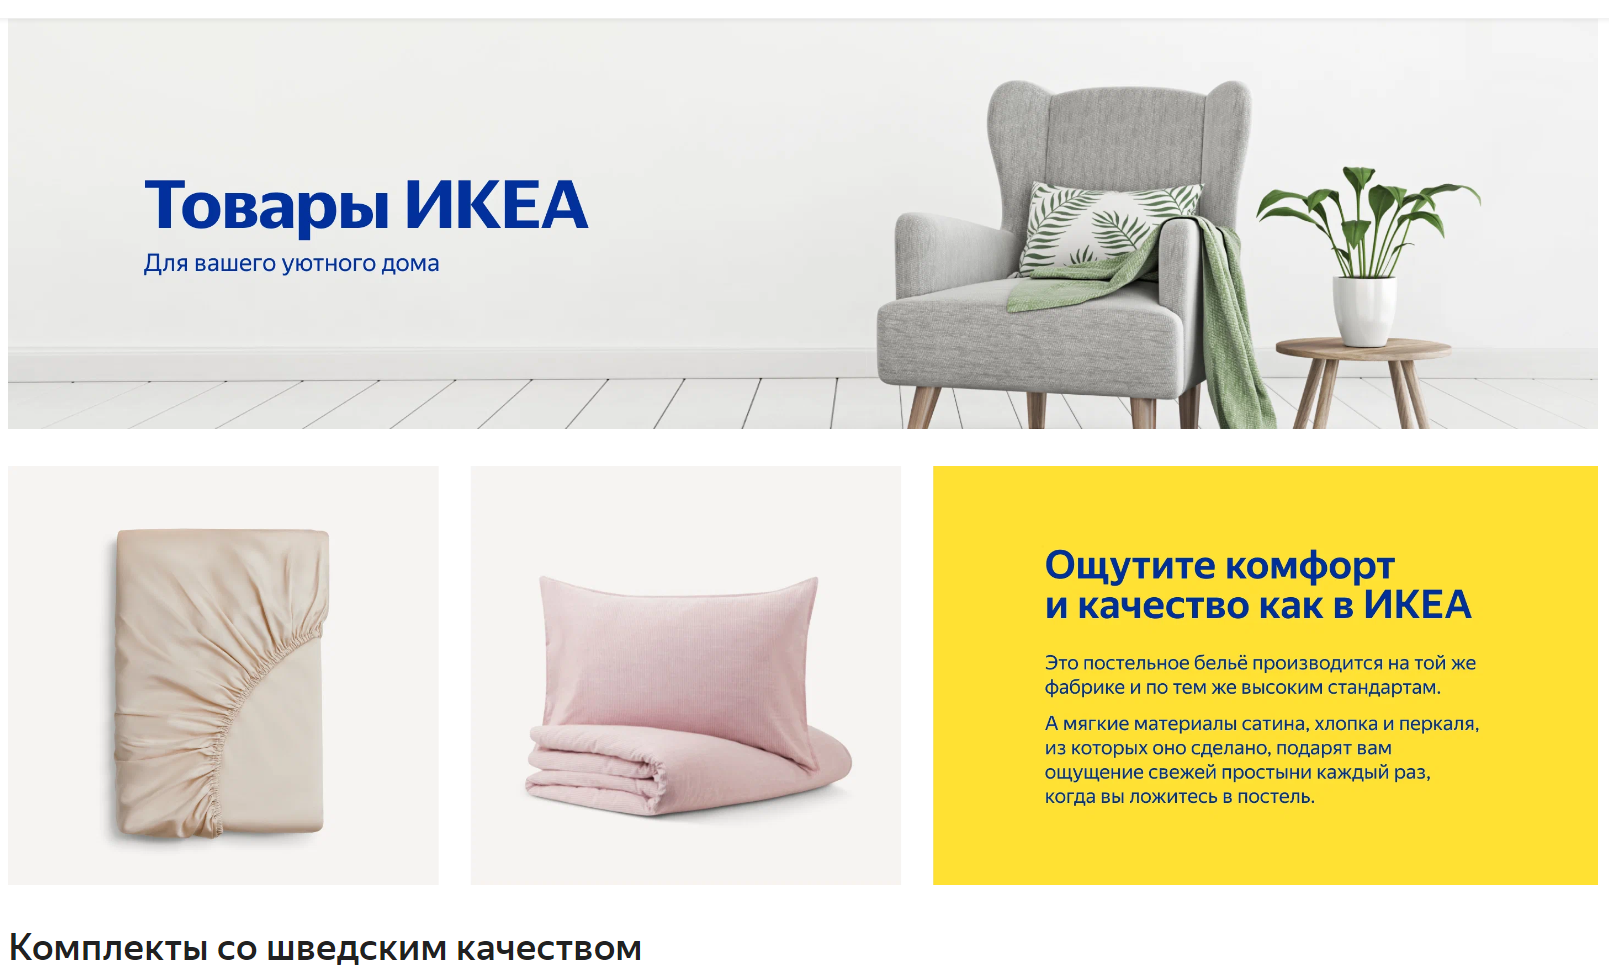 Интернет магазин икеа купить товар. Ikea товары. Товары из икеа.